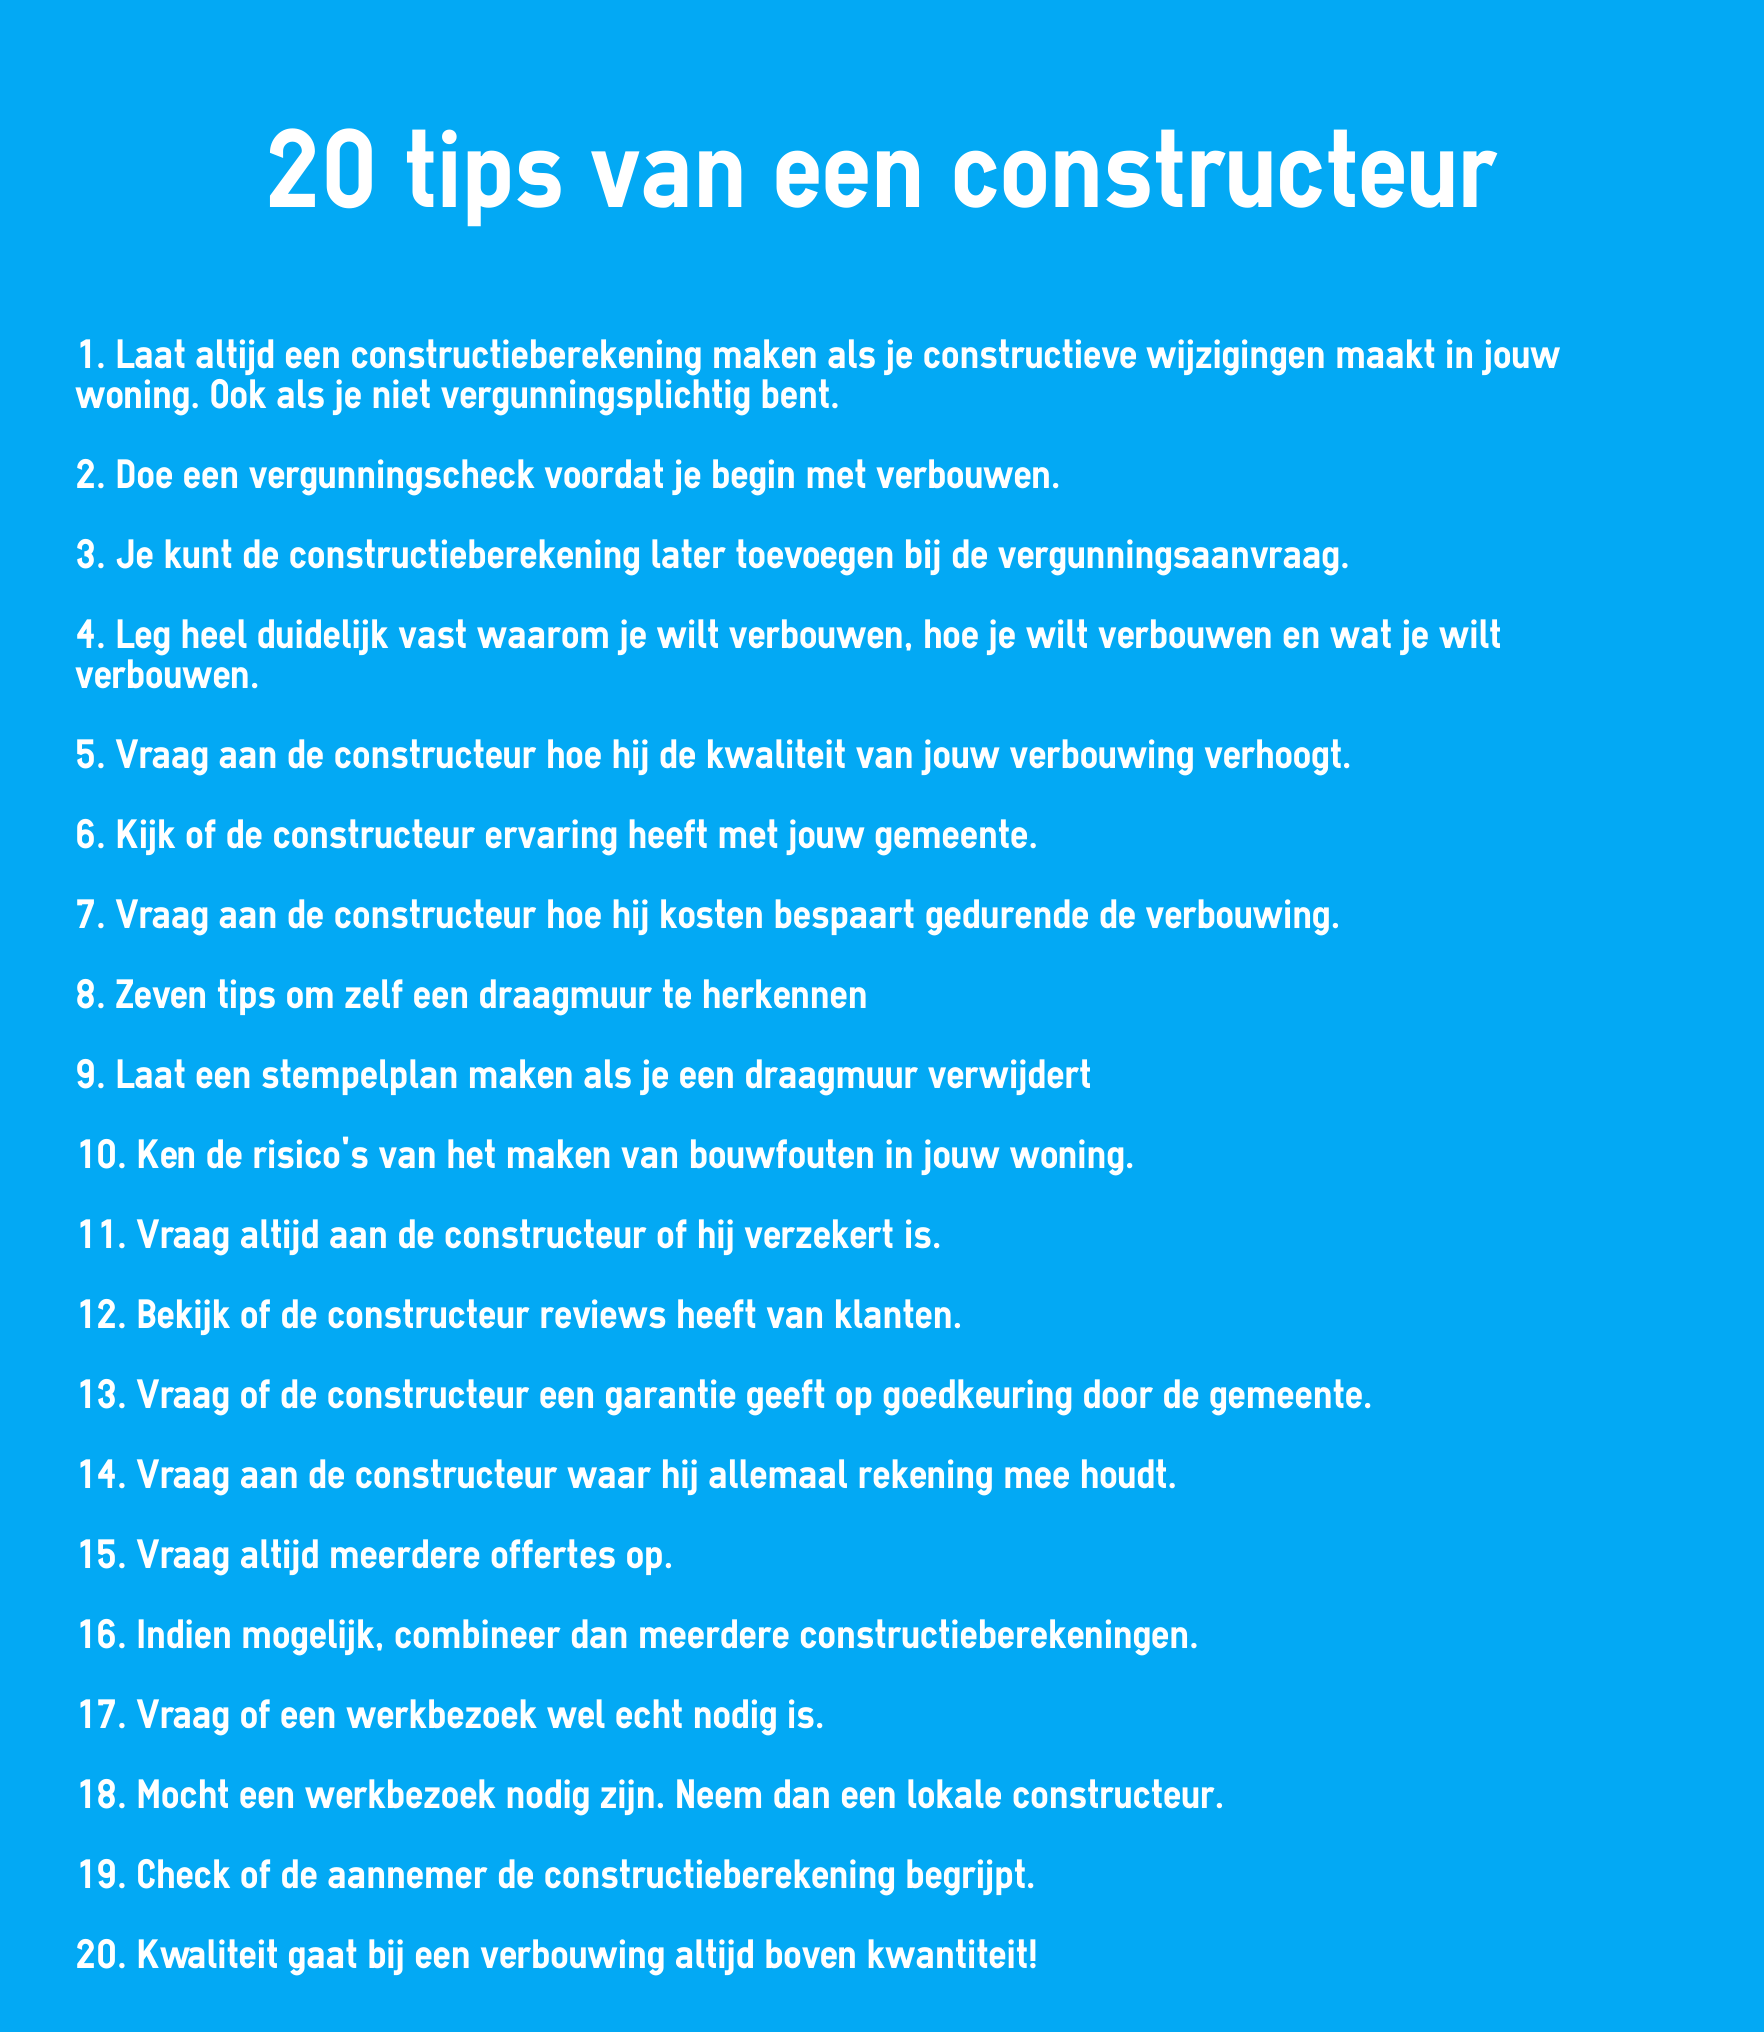 20 tips van een constructeur